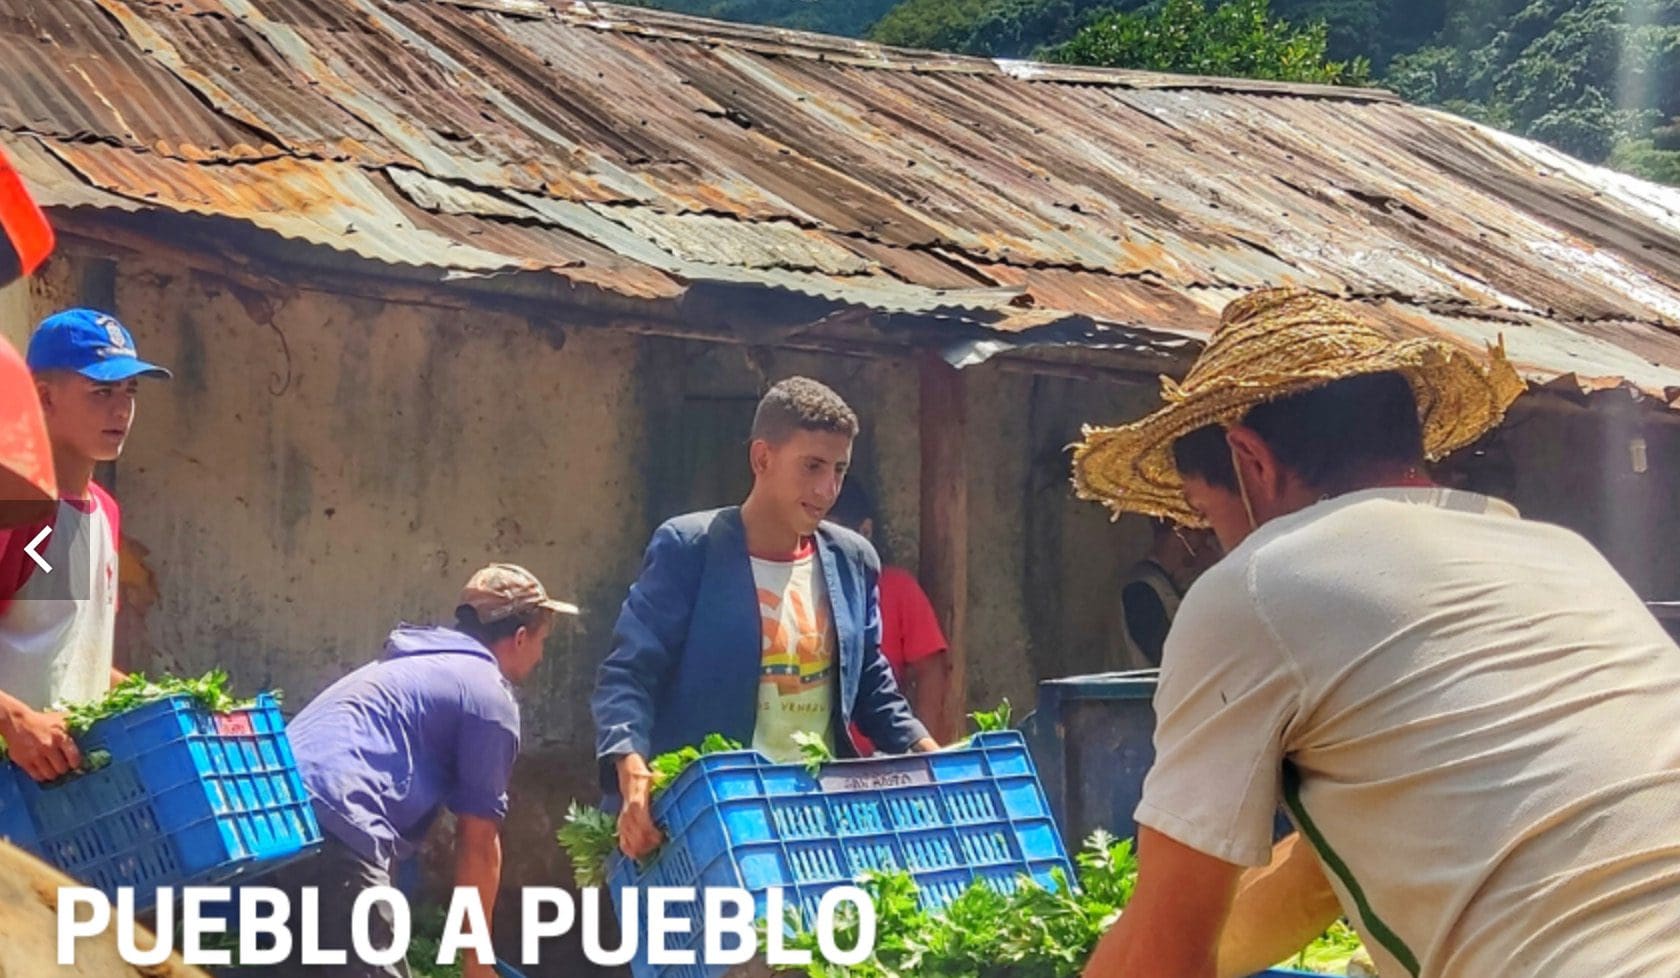 aufbau-der-ernaehrungssouveraenitaet-von-unten-in-venezuela:-„pueblo-a-pueblo“-umgeht-die-blockade